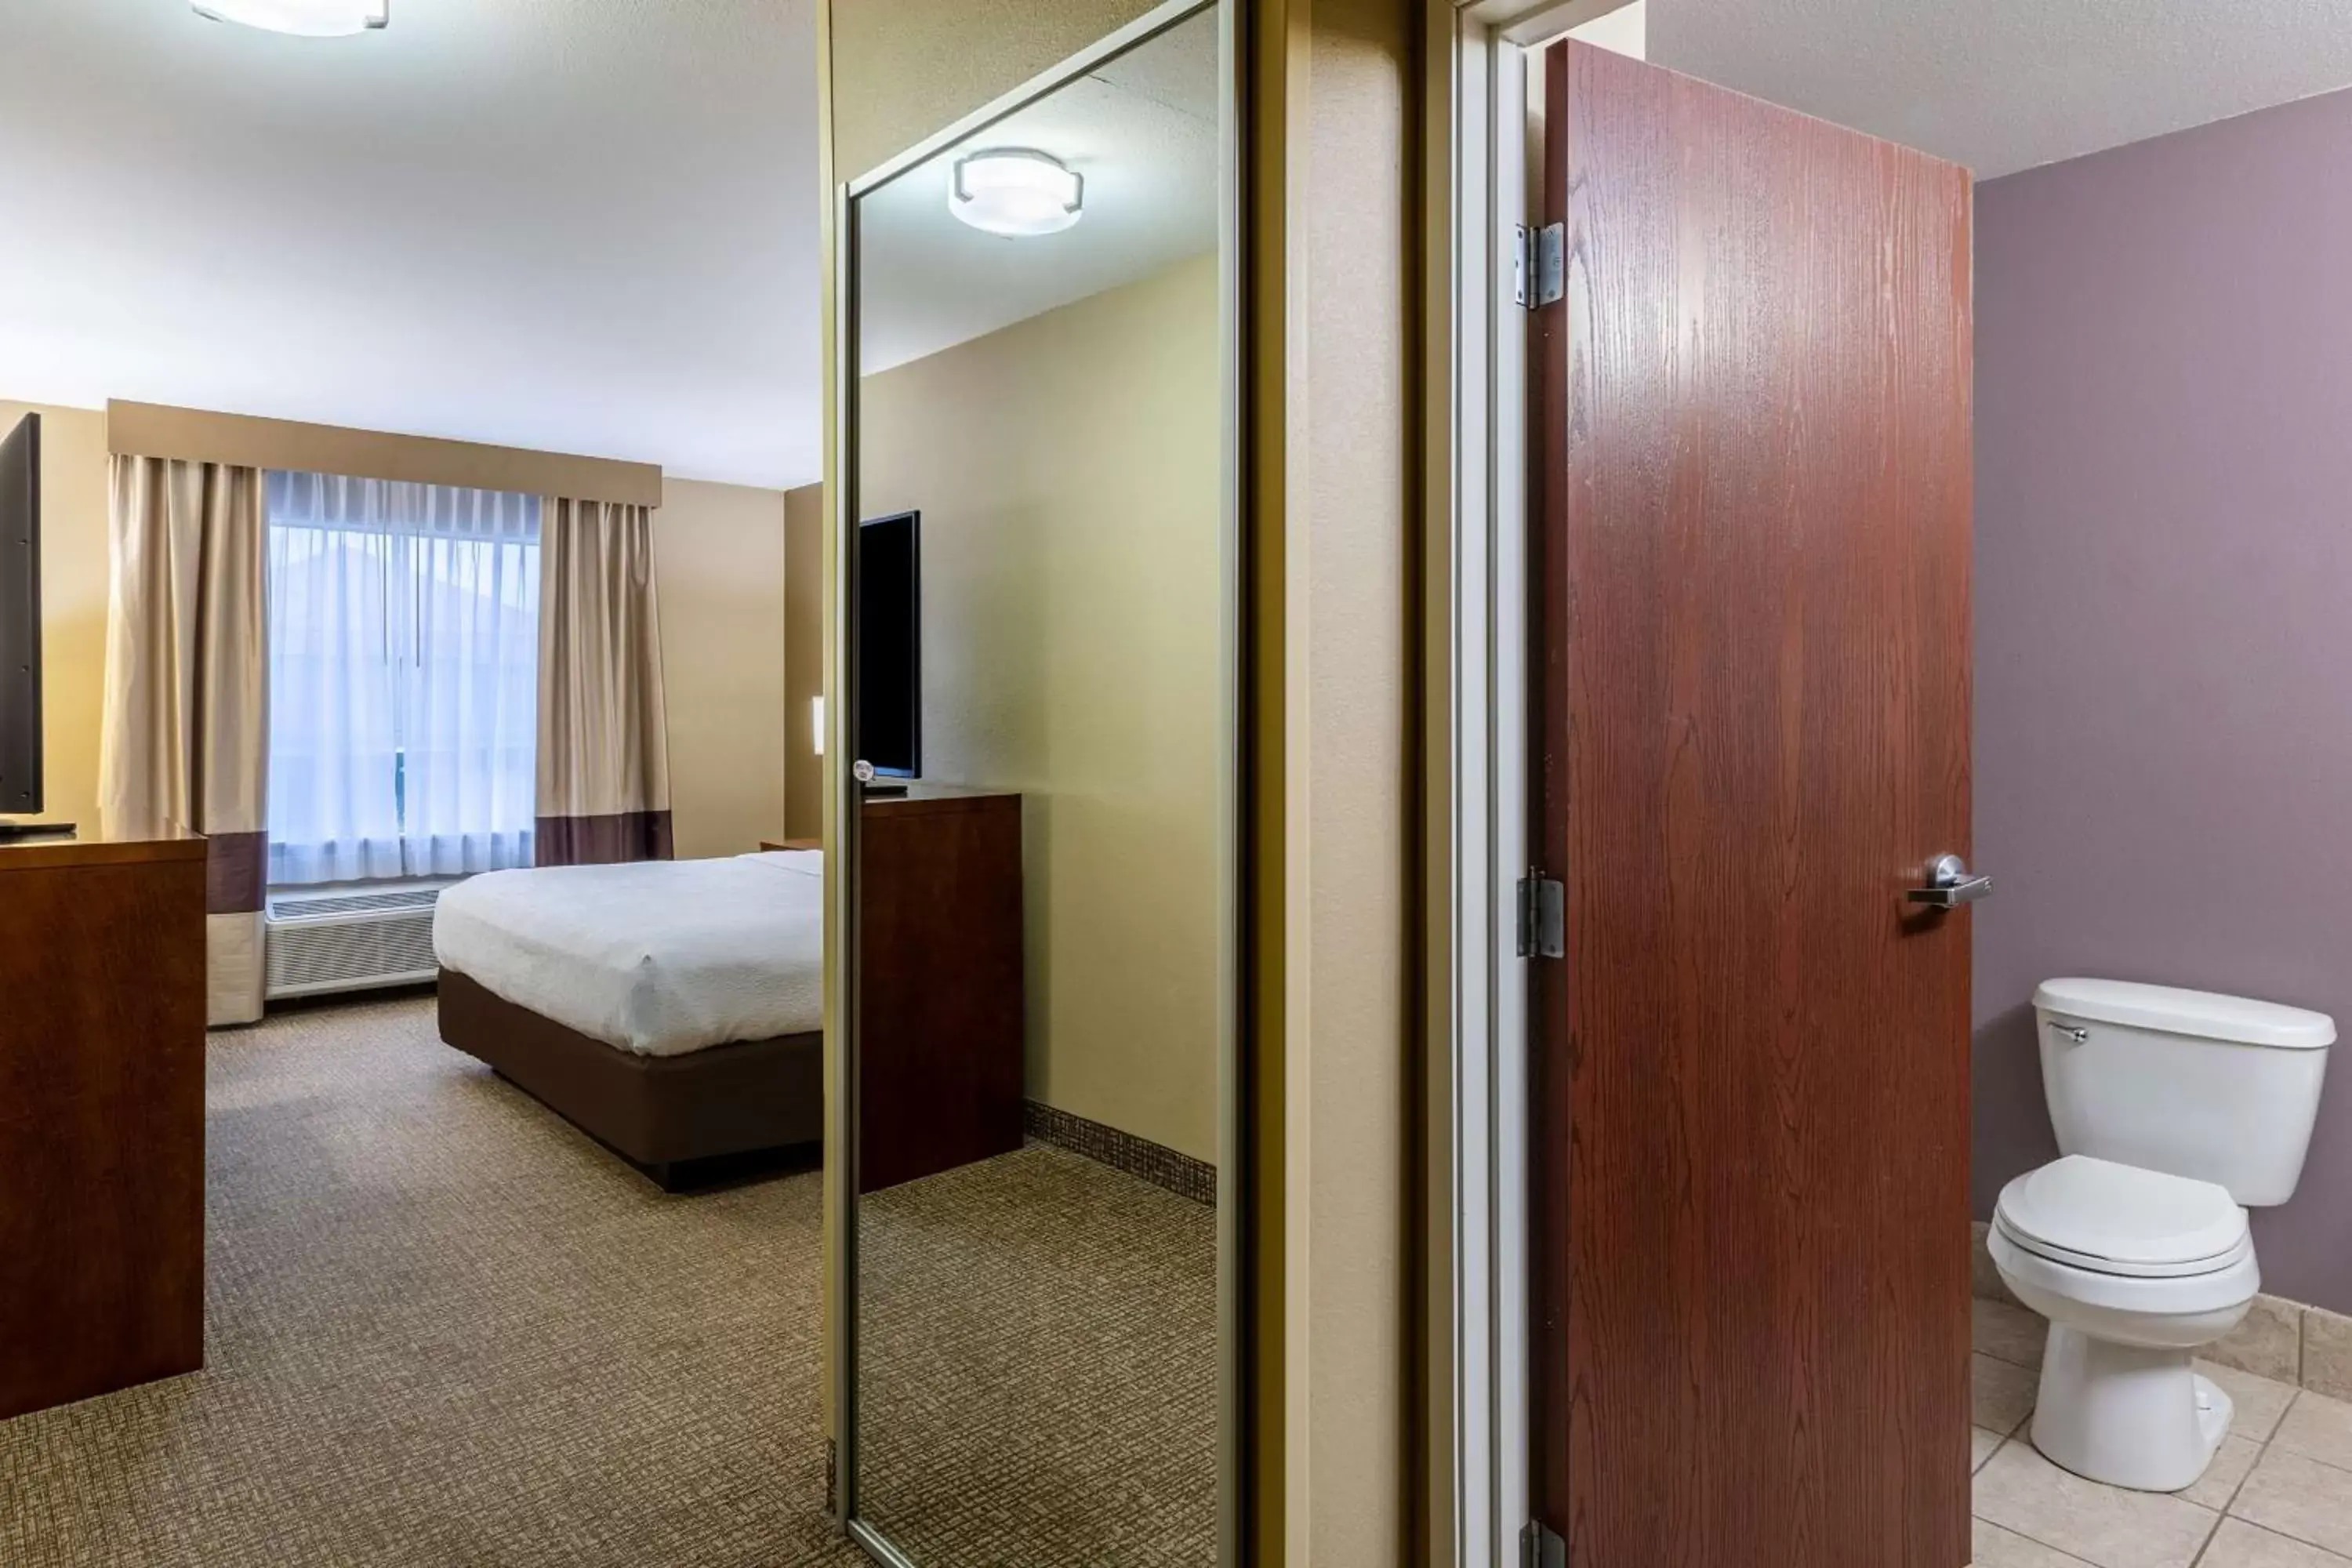 Bedroom, Bathroom in Best Western Morgan City Inn